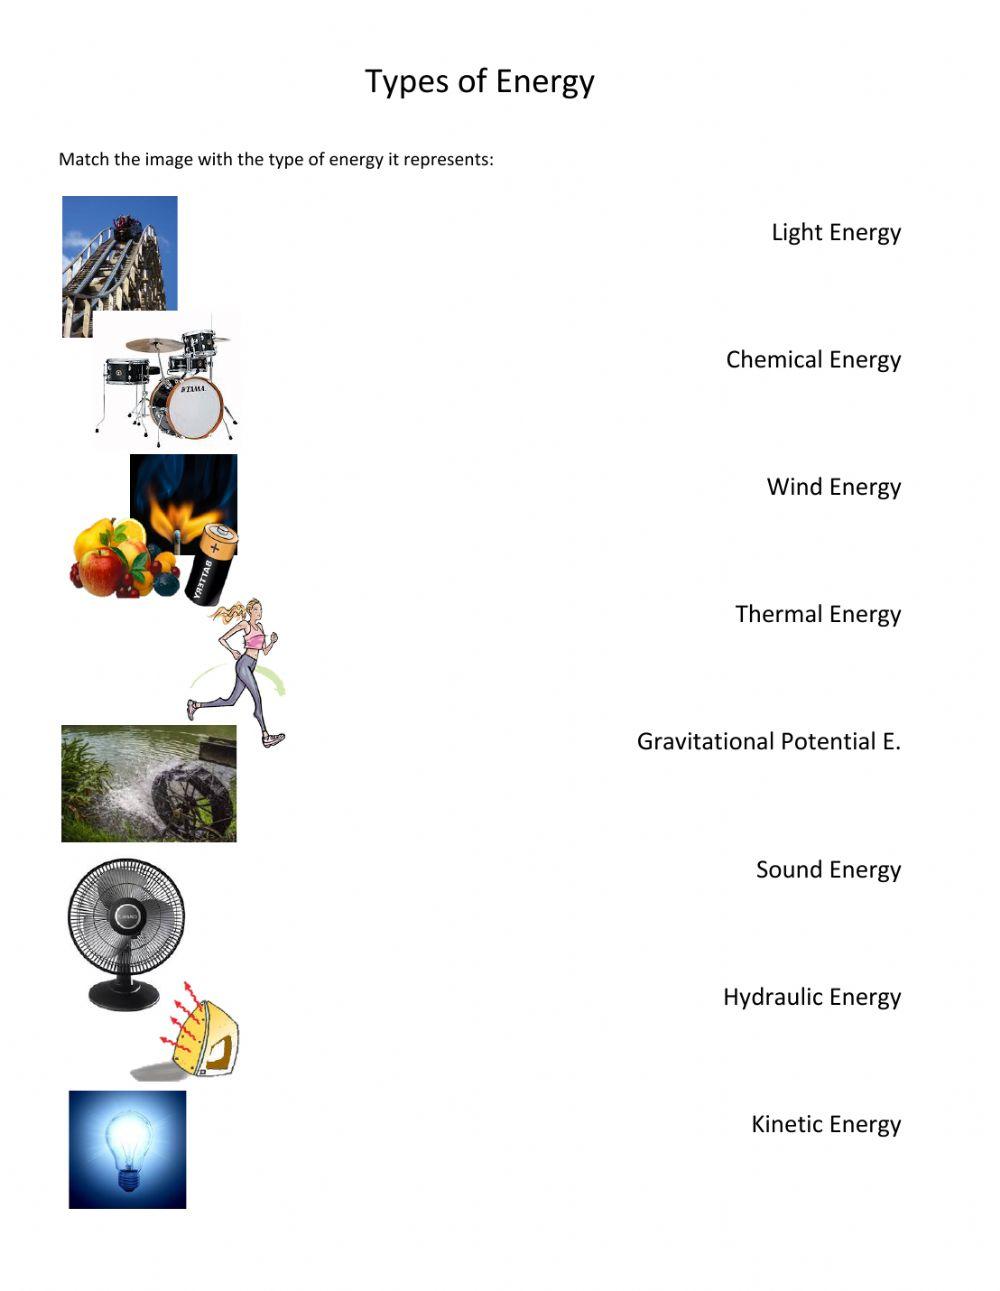 Types of energies